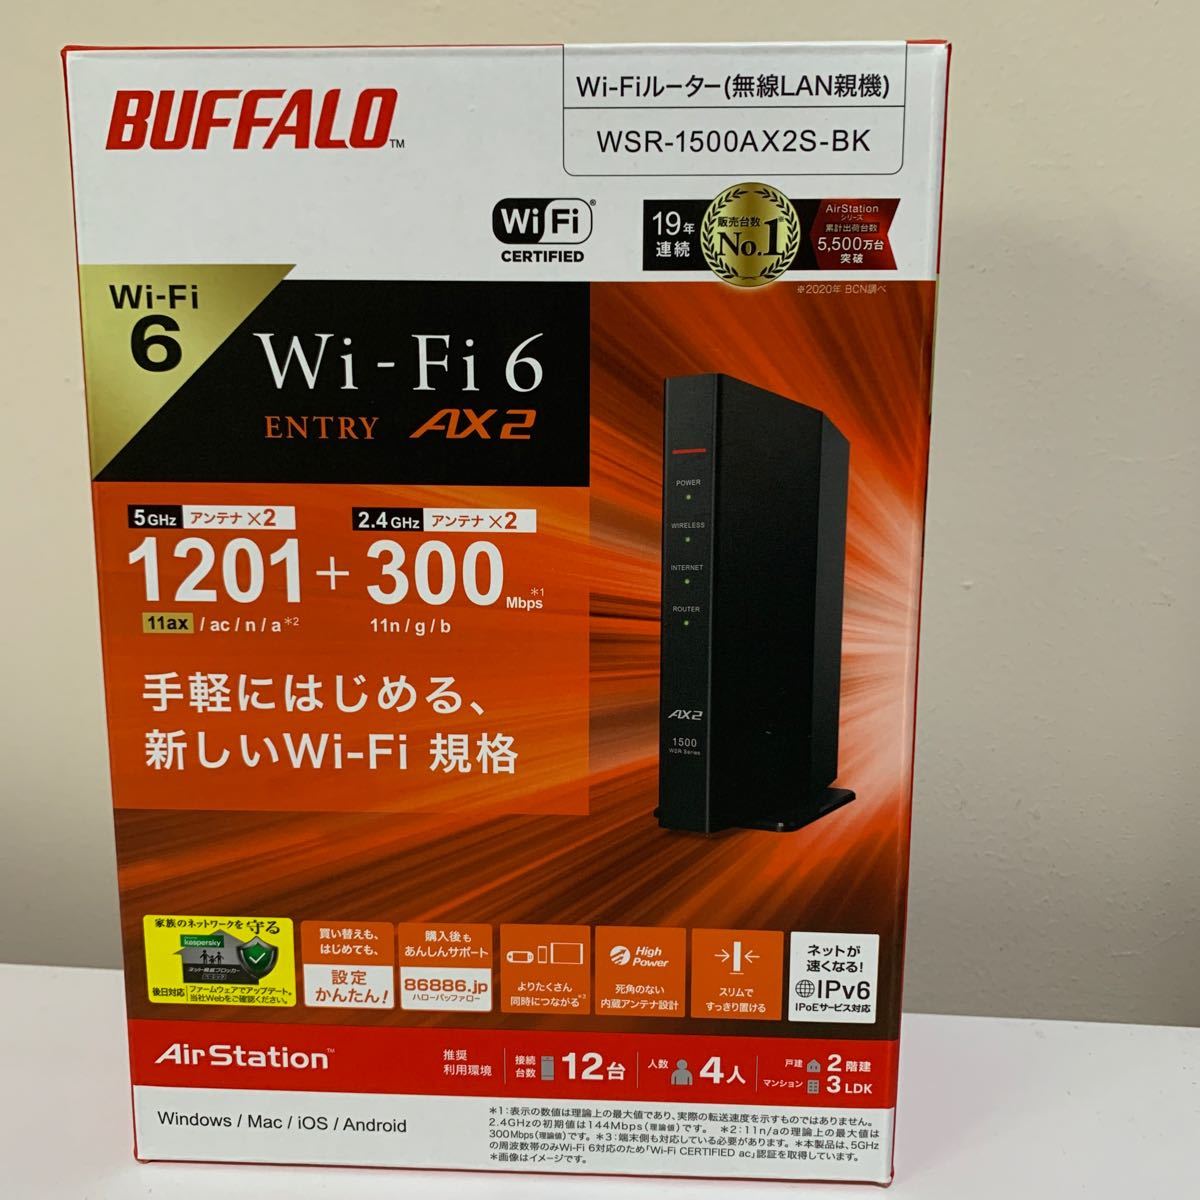 全国総量無料で バッファロー BUFFALO WSR-1500AX2S-WH ホワイト Wi-Fi 6対応ルーター エントリーモデル  discoversvg.com